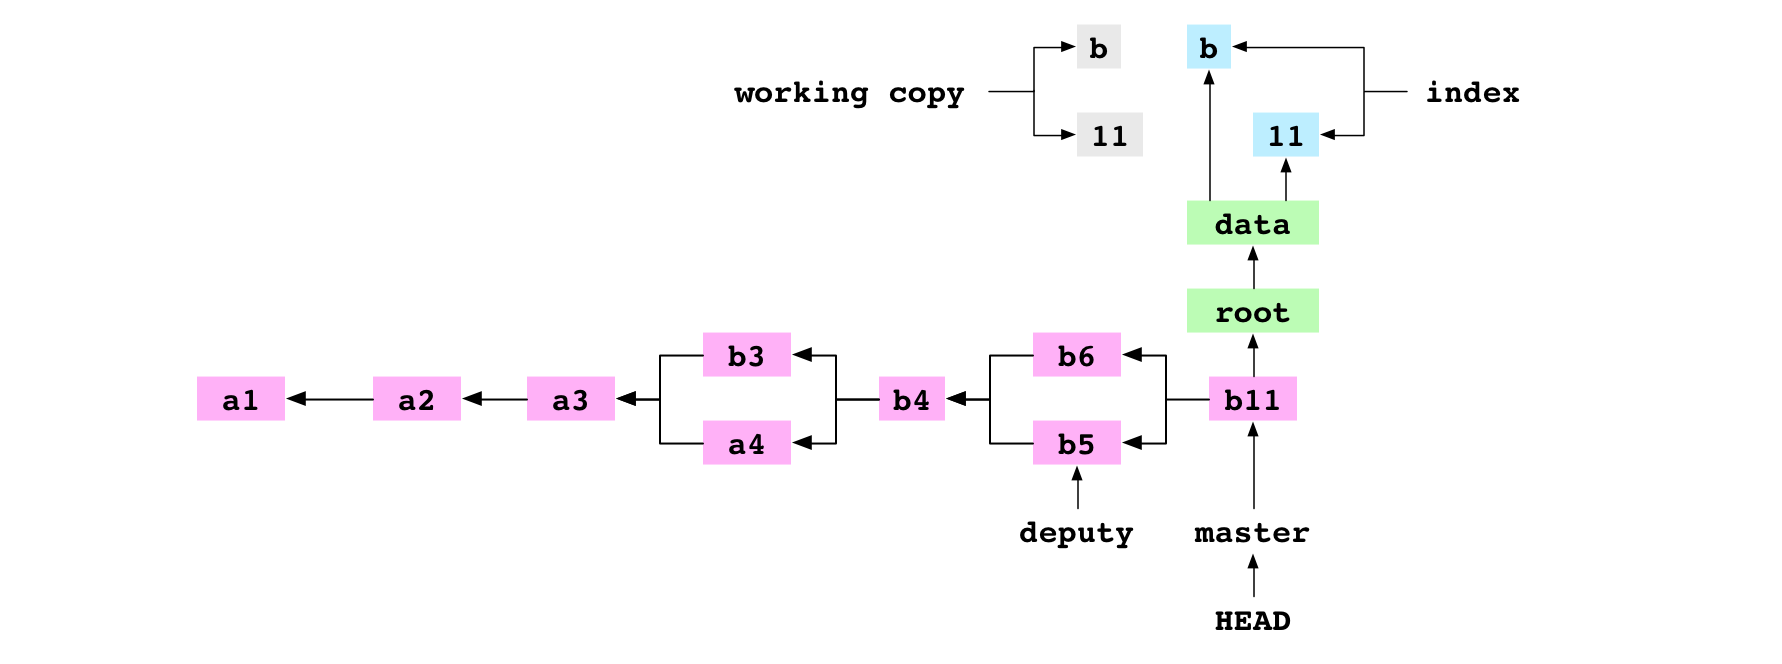 La copie de travail, l'index, le commit b11 et son graphe